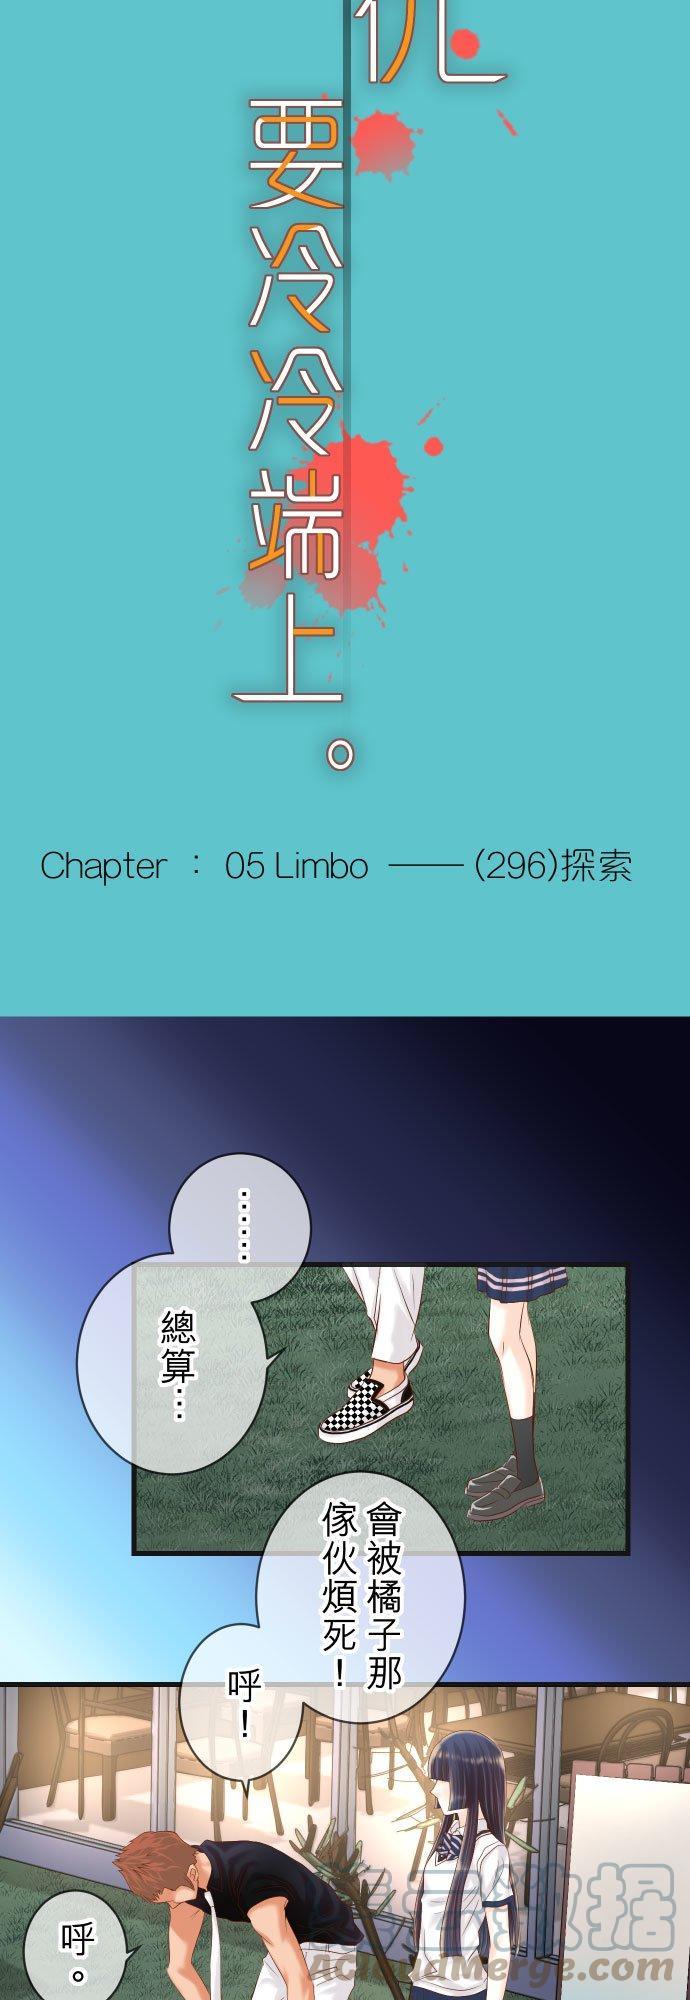 第五章 Limbo 296 探索6